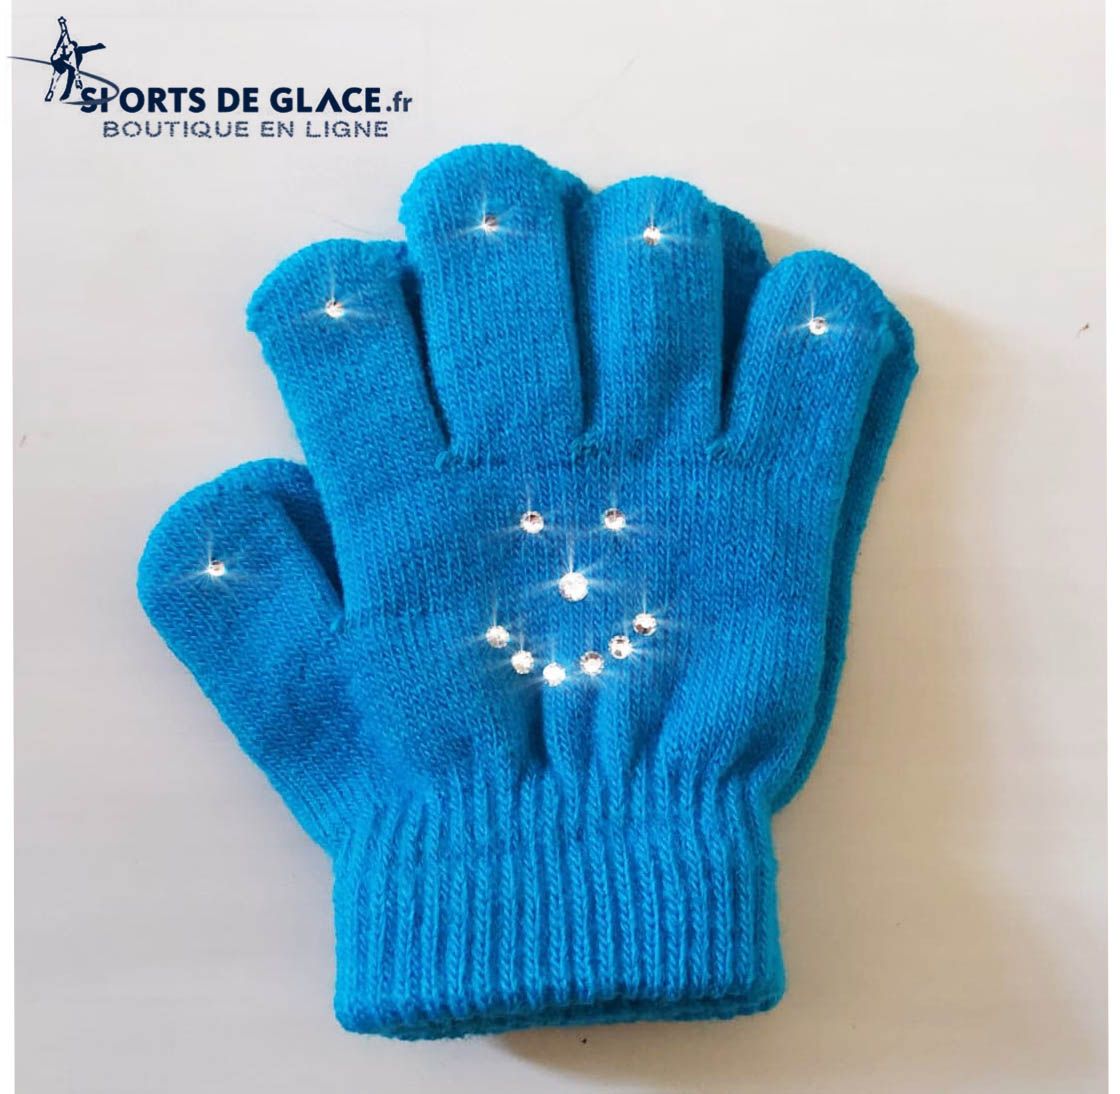 https://www.sports-de-glace.fr/7345/gants-enfant-smiley.jpg